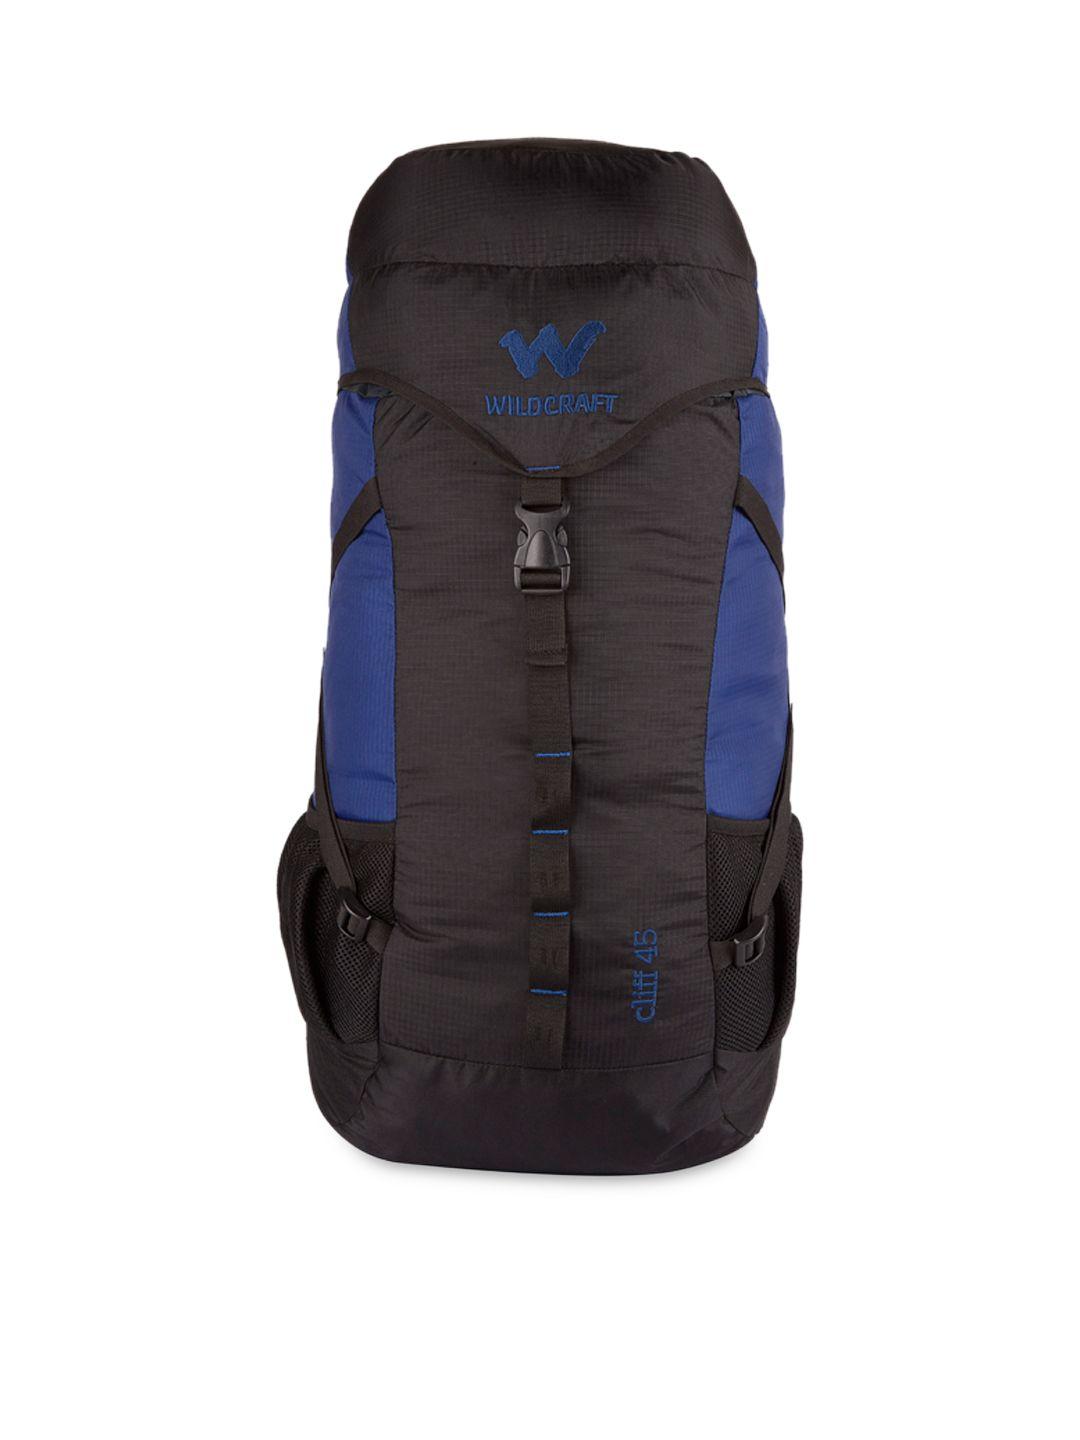 wildcraft unisex black & blue rucksack